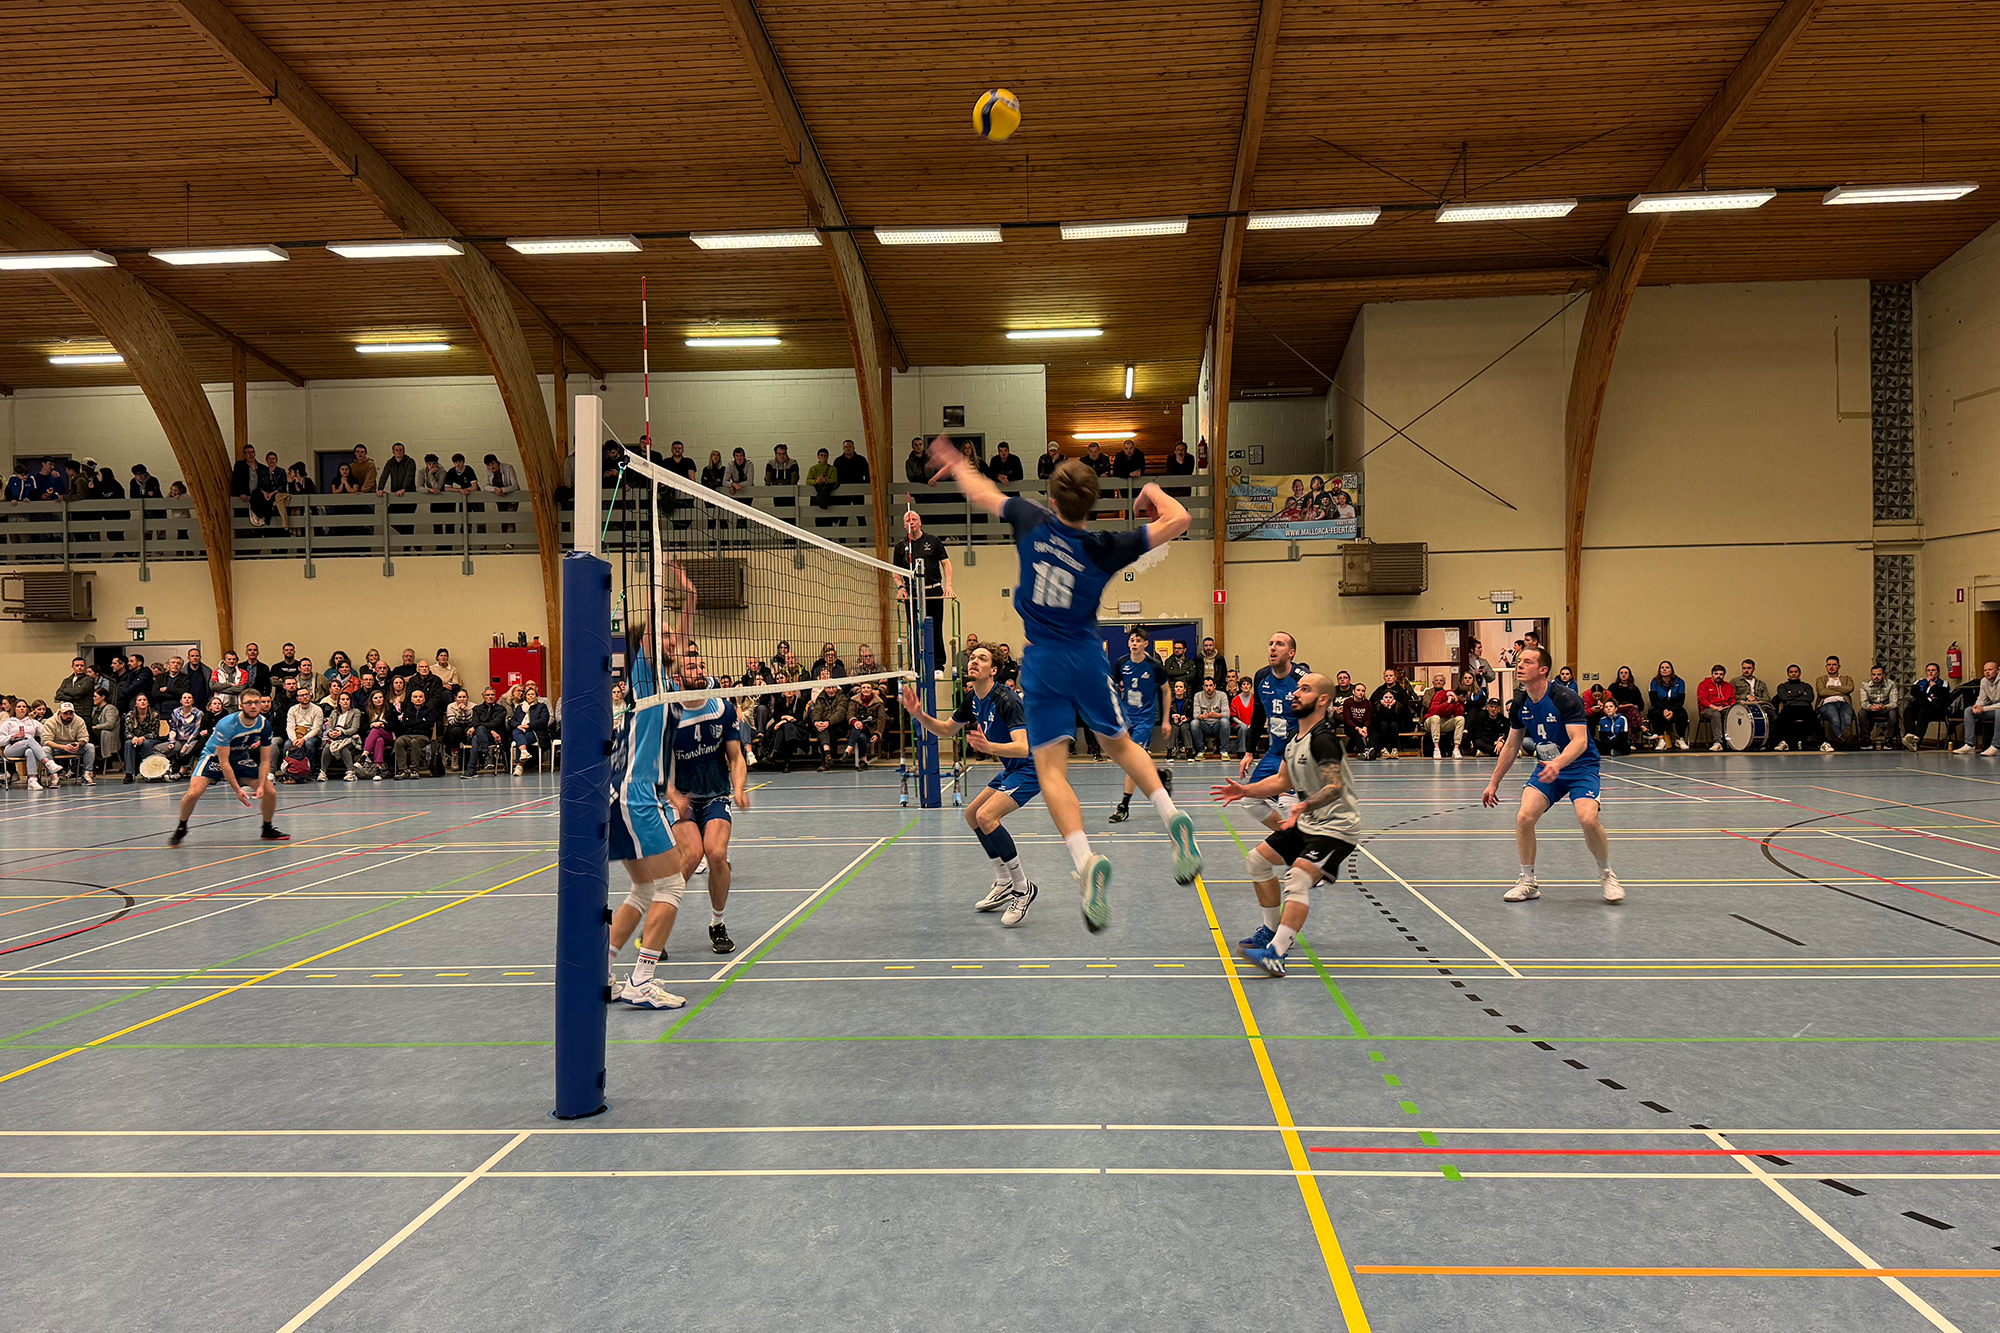 Sporta Eupen-Kettenis haben sich gegen die Mannschaft aus Franchimont-Theux durchsetzen können (Bild: Robin Emonts/BRF)